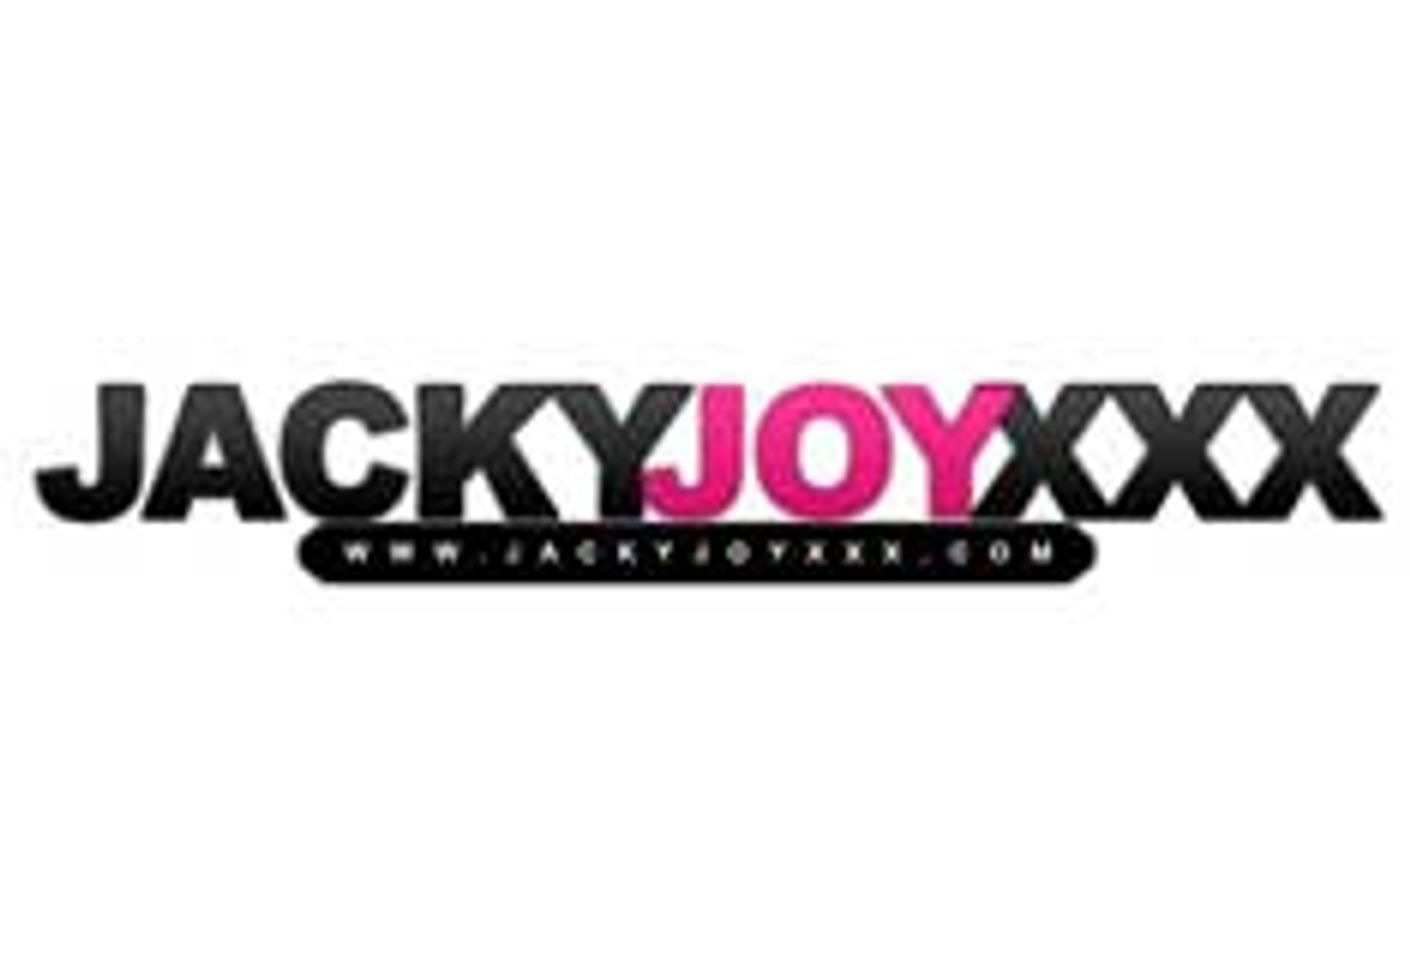 JackyJoyxxx.com Adds Affiliate Program